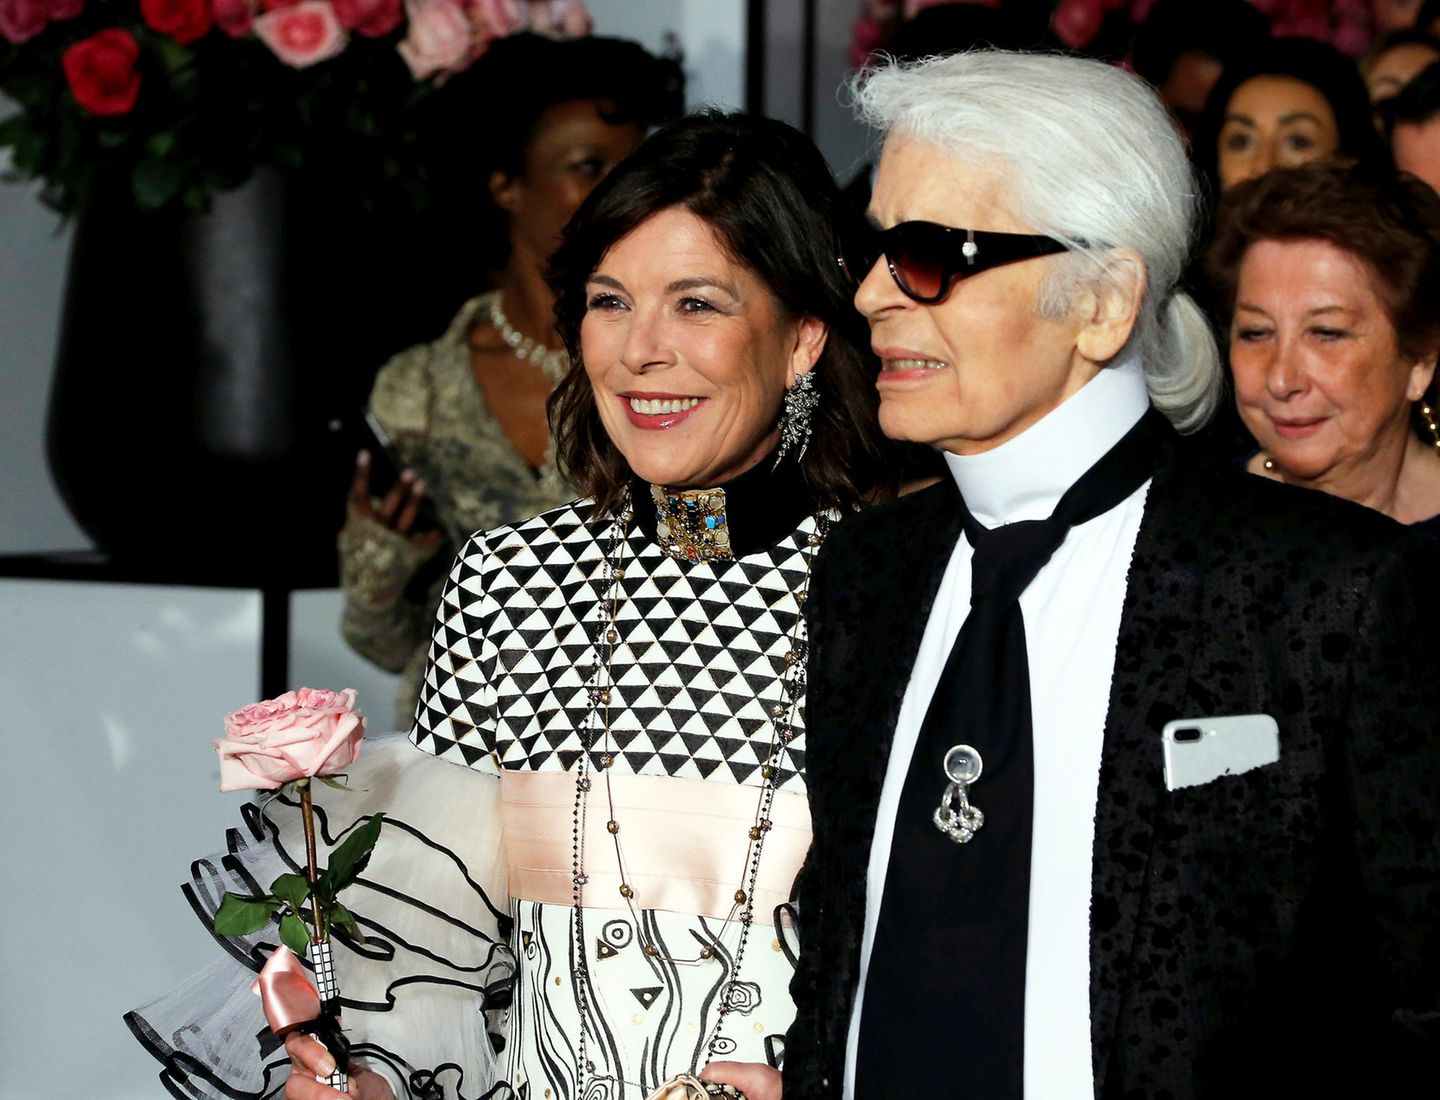 Prinzessin Caroline von Monaco ist eine der größten Royal-Fans von Modeschöpfer Karl Lagerfeld. Immer wieder sah und sieht man sie in Kreationen von Chanel. Dieses Bild zeigt Caroline und Karl Lagerfeld beim Rosenball 2017. 